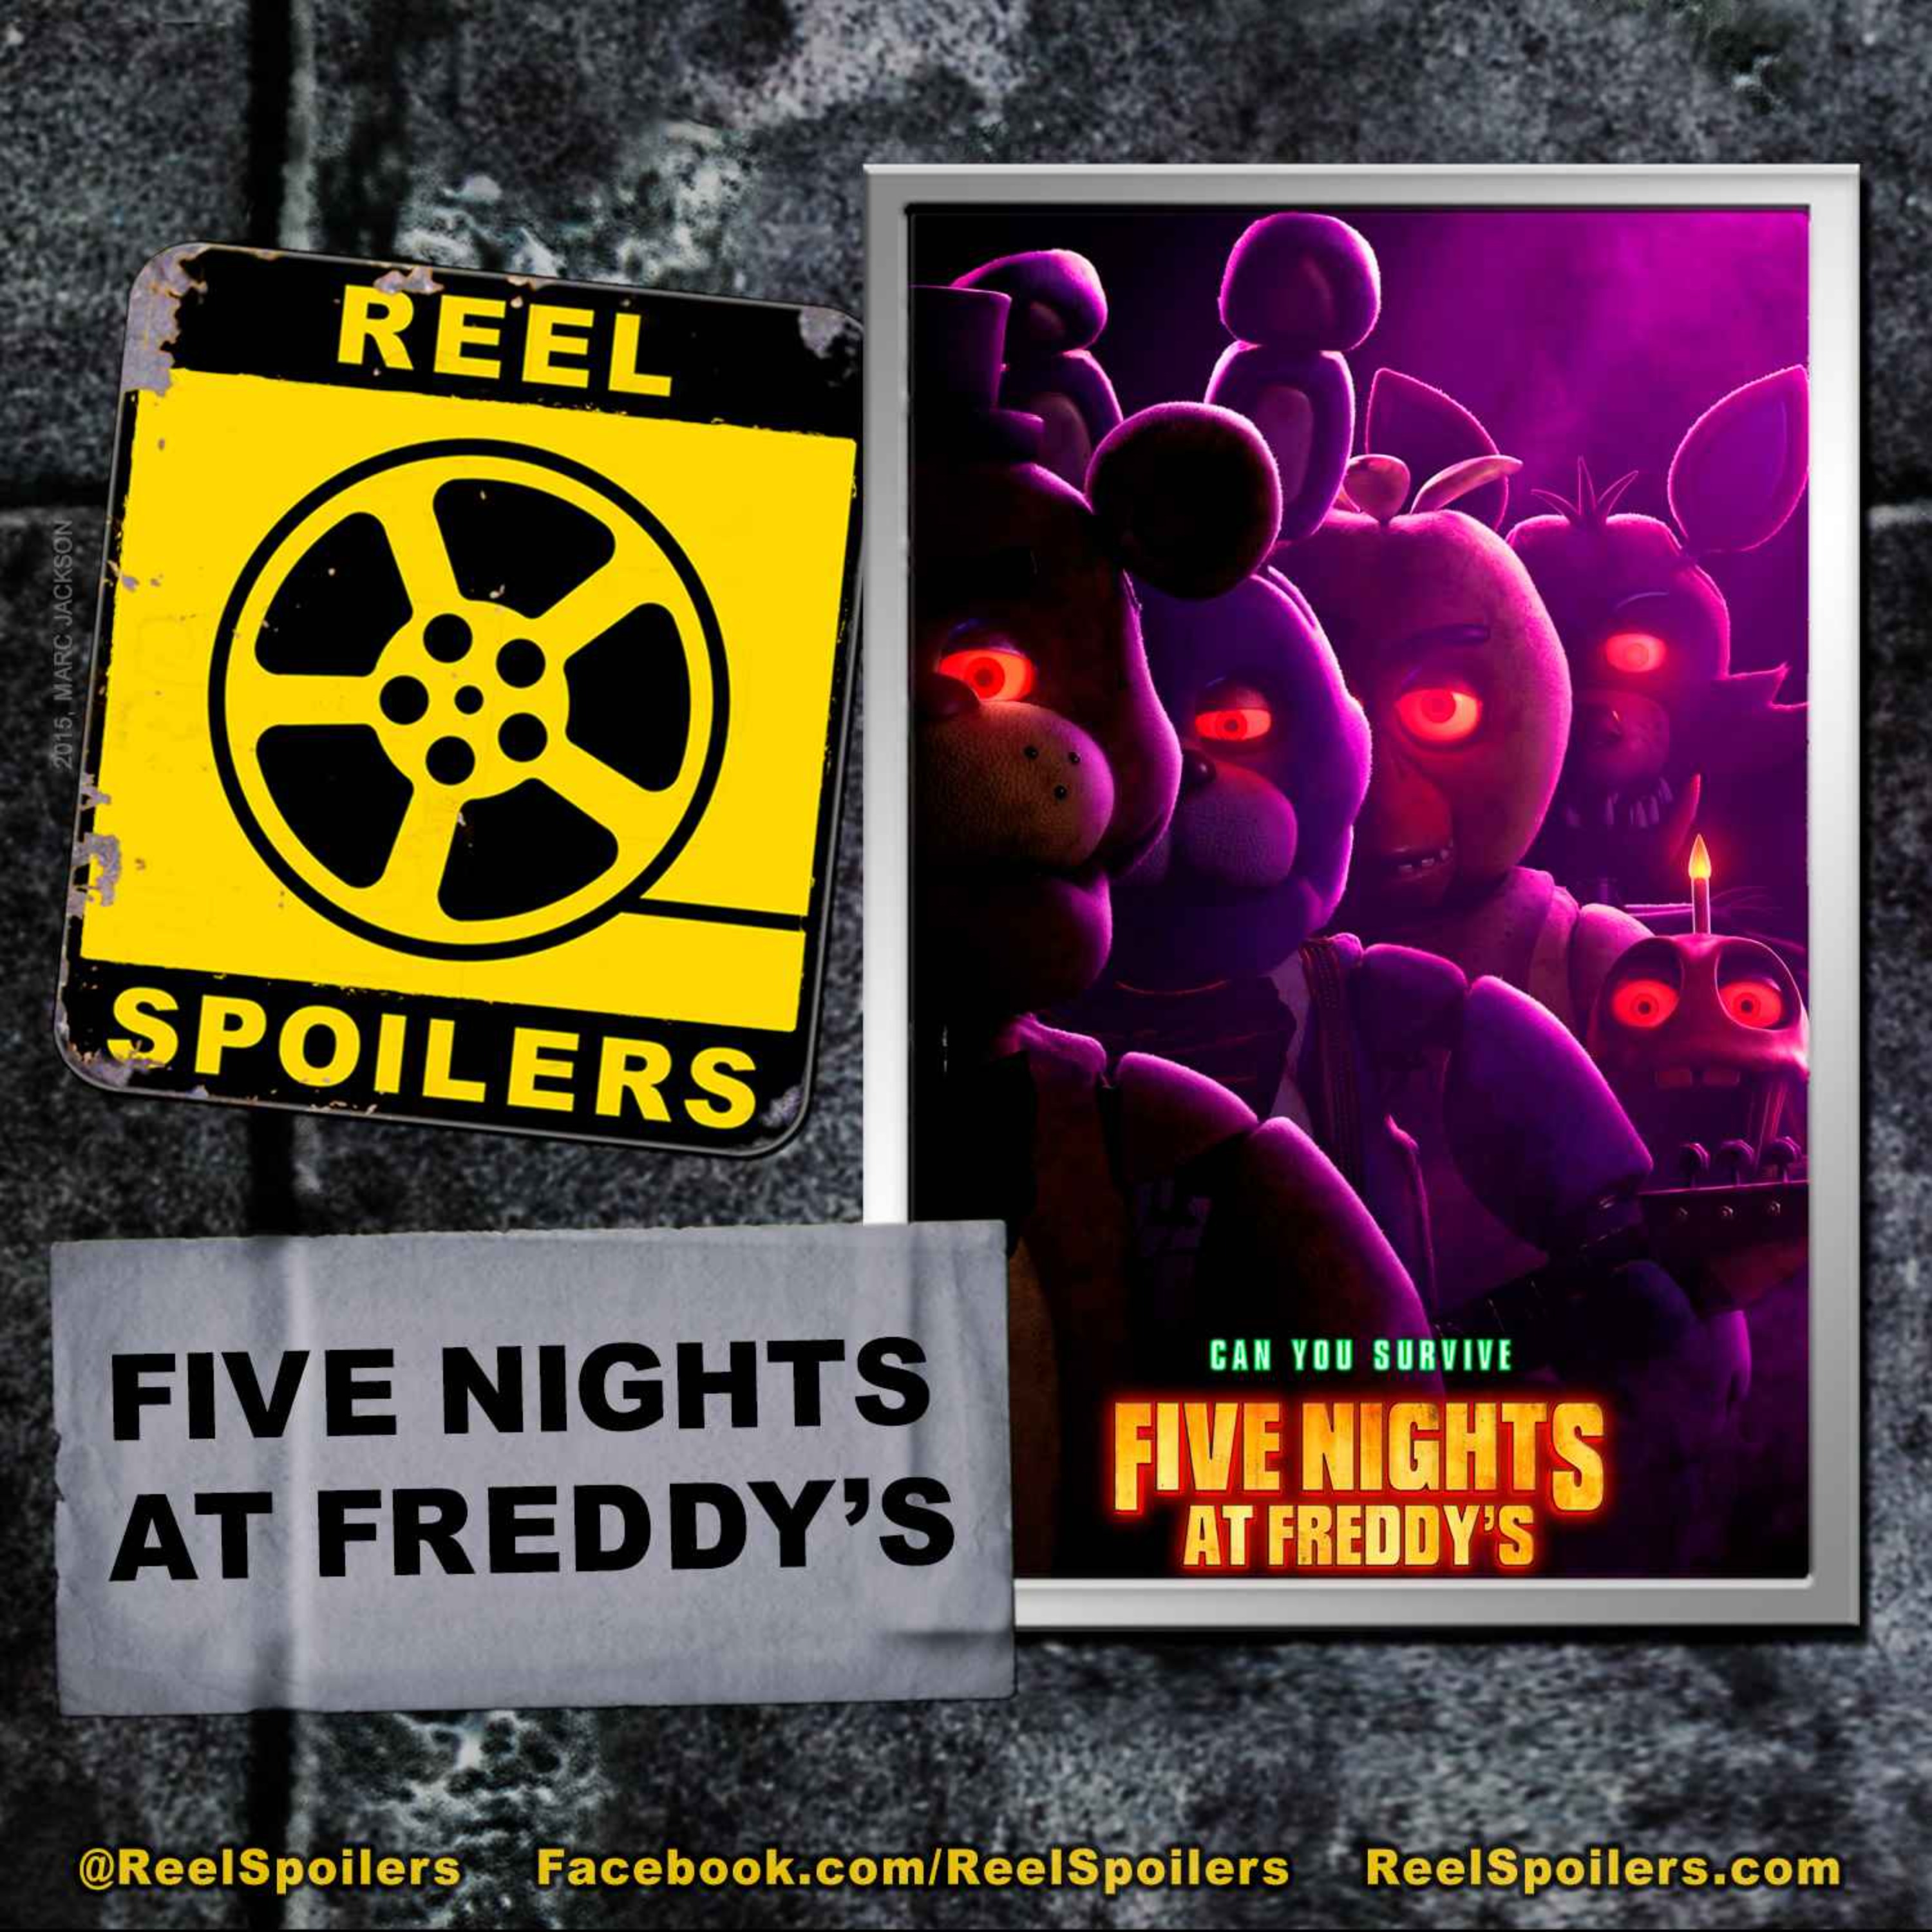 FIVE NIGHTS AT FREDDY'S Starring Josh Hutcherson, Elizabeth Lail, Matthew Lillard